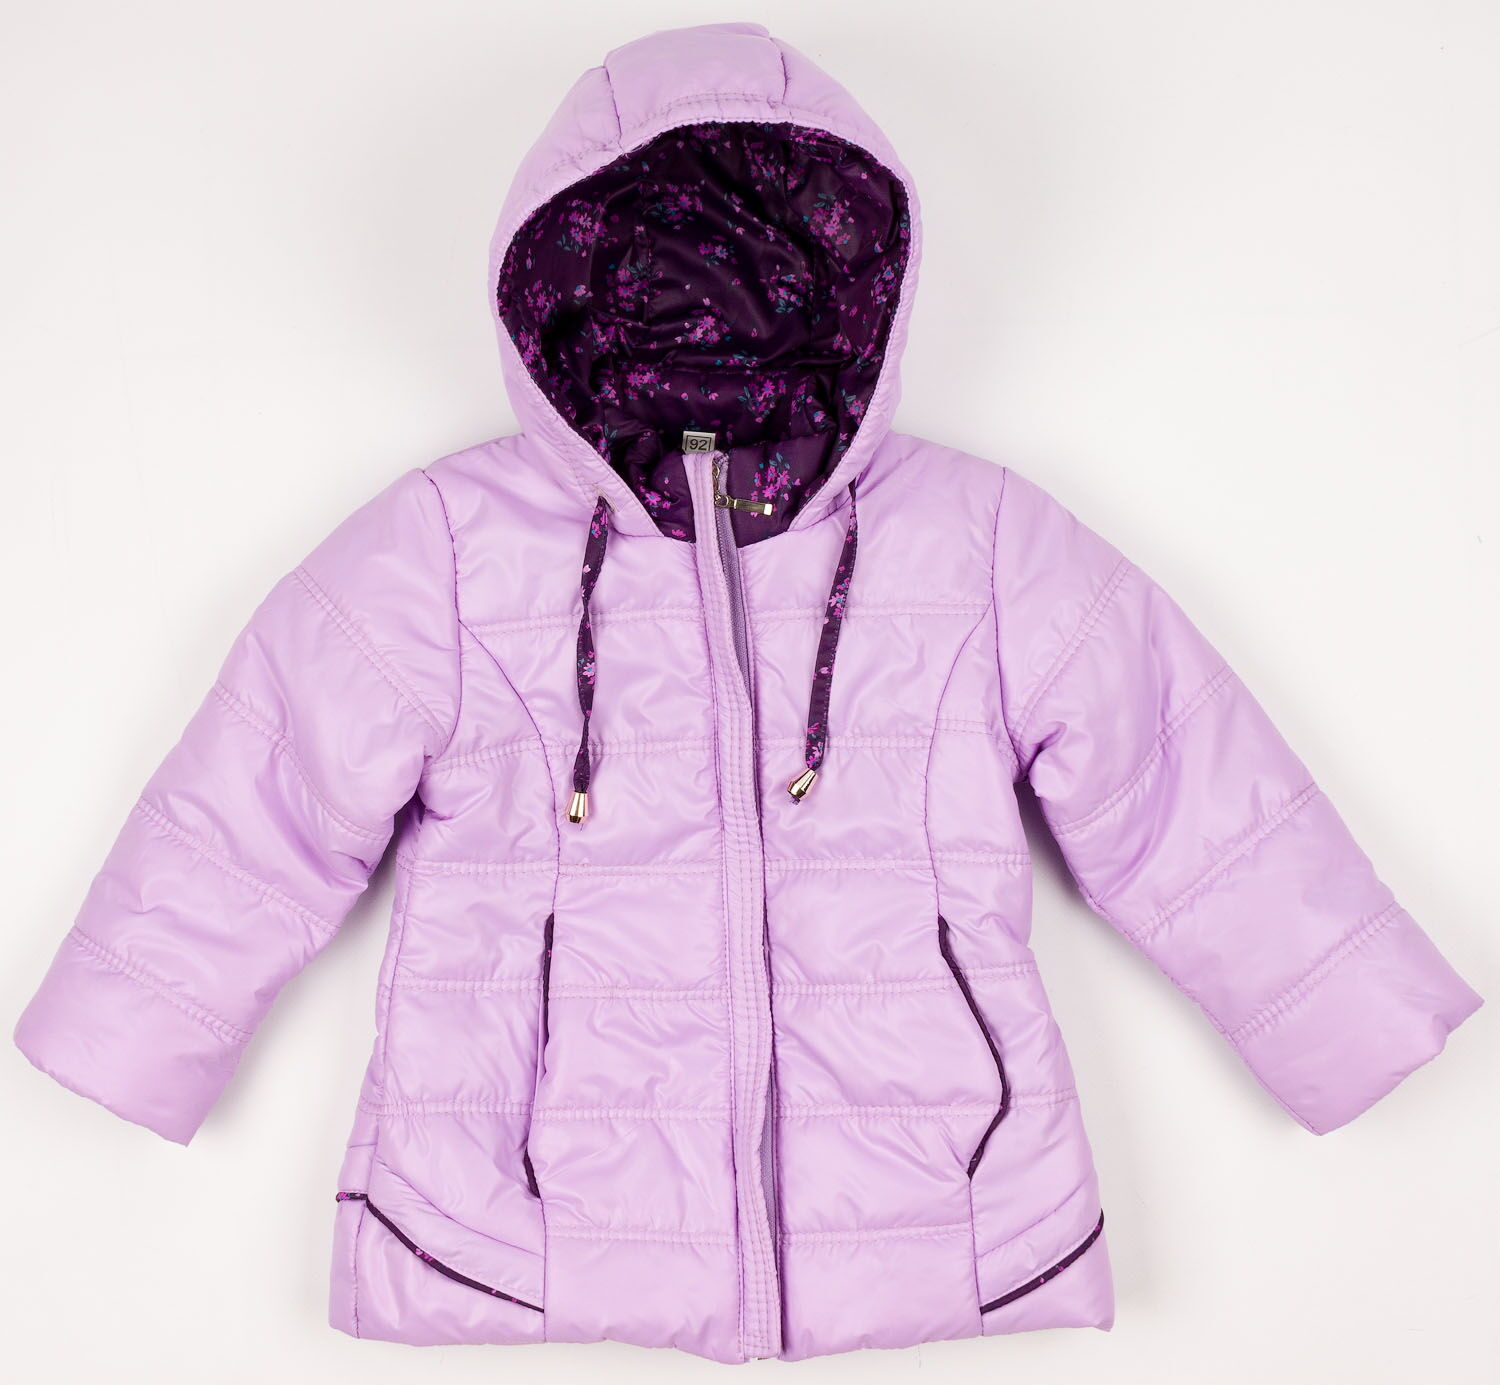 Куртка для девочки Одягайко сирень 2721 - цена